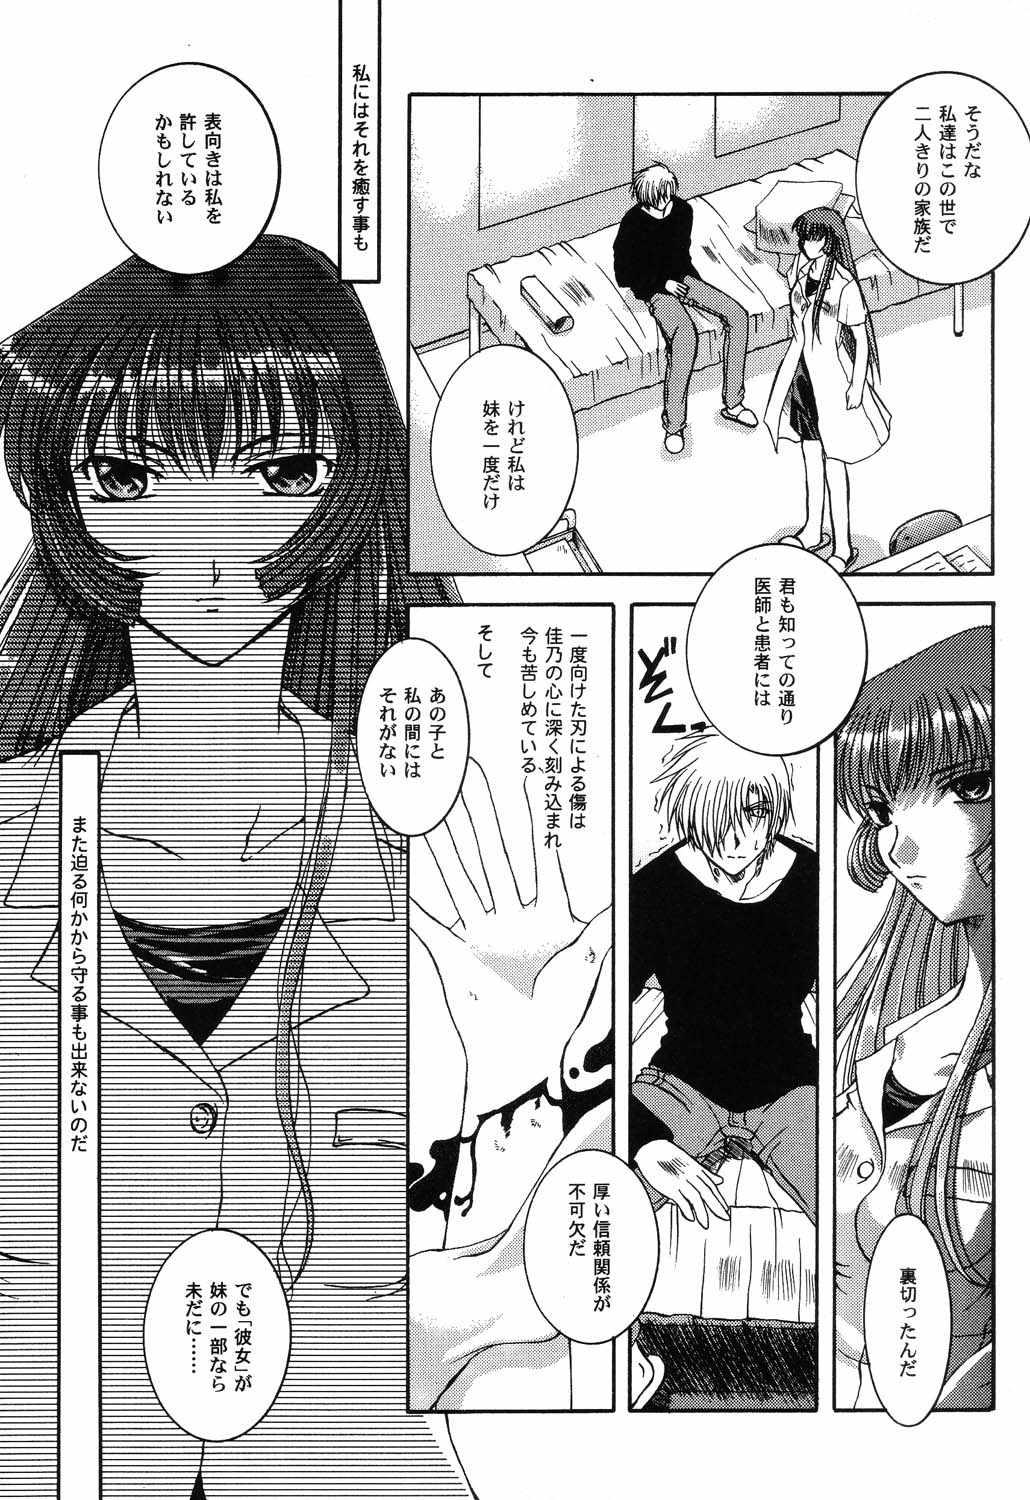 Gozo Himitsu no Serenade 3 - Kanon Air Pissing - Page 10